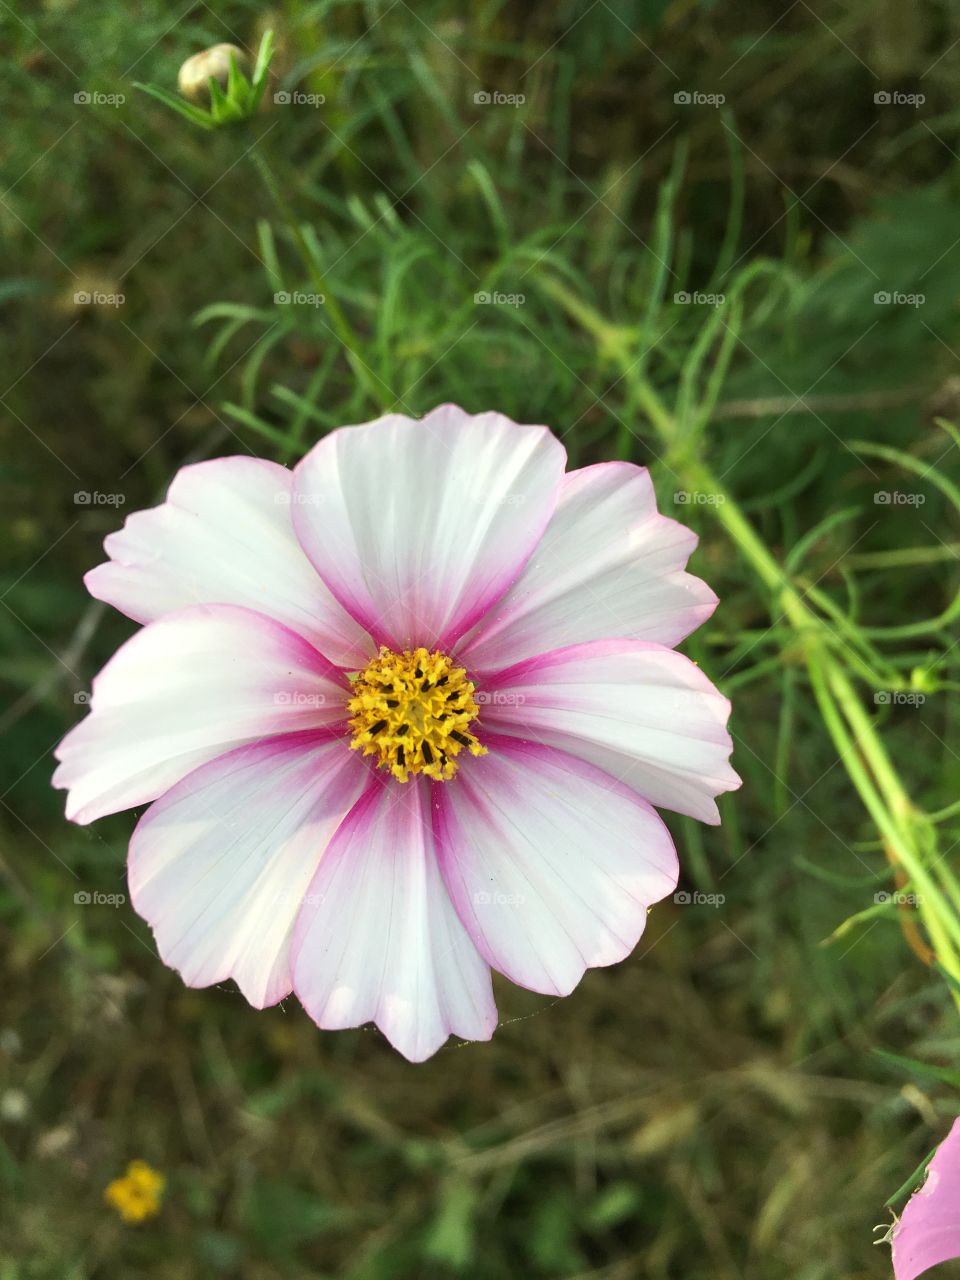 Mound flower